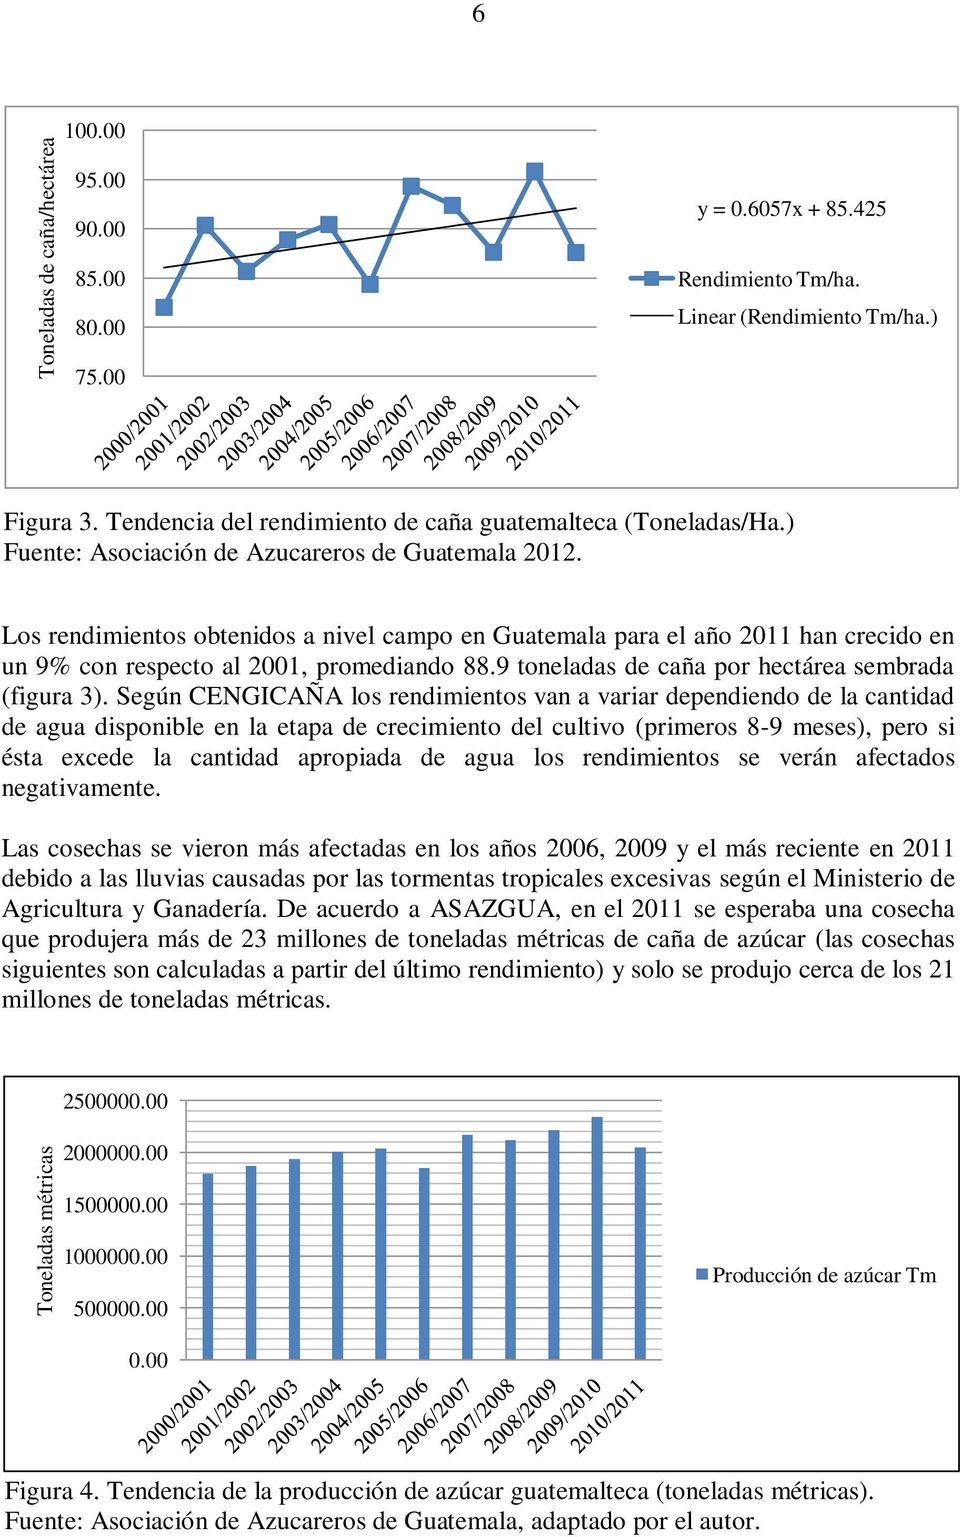 Los rendimientos obtenidos a nivel campo en Guatemala para el año 2011 han crecido en un 9% con respecto al 2001, promediando 88.9 toneladas de caña por hectárea sembrada (figura 3).